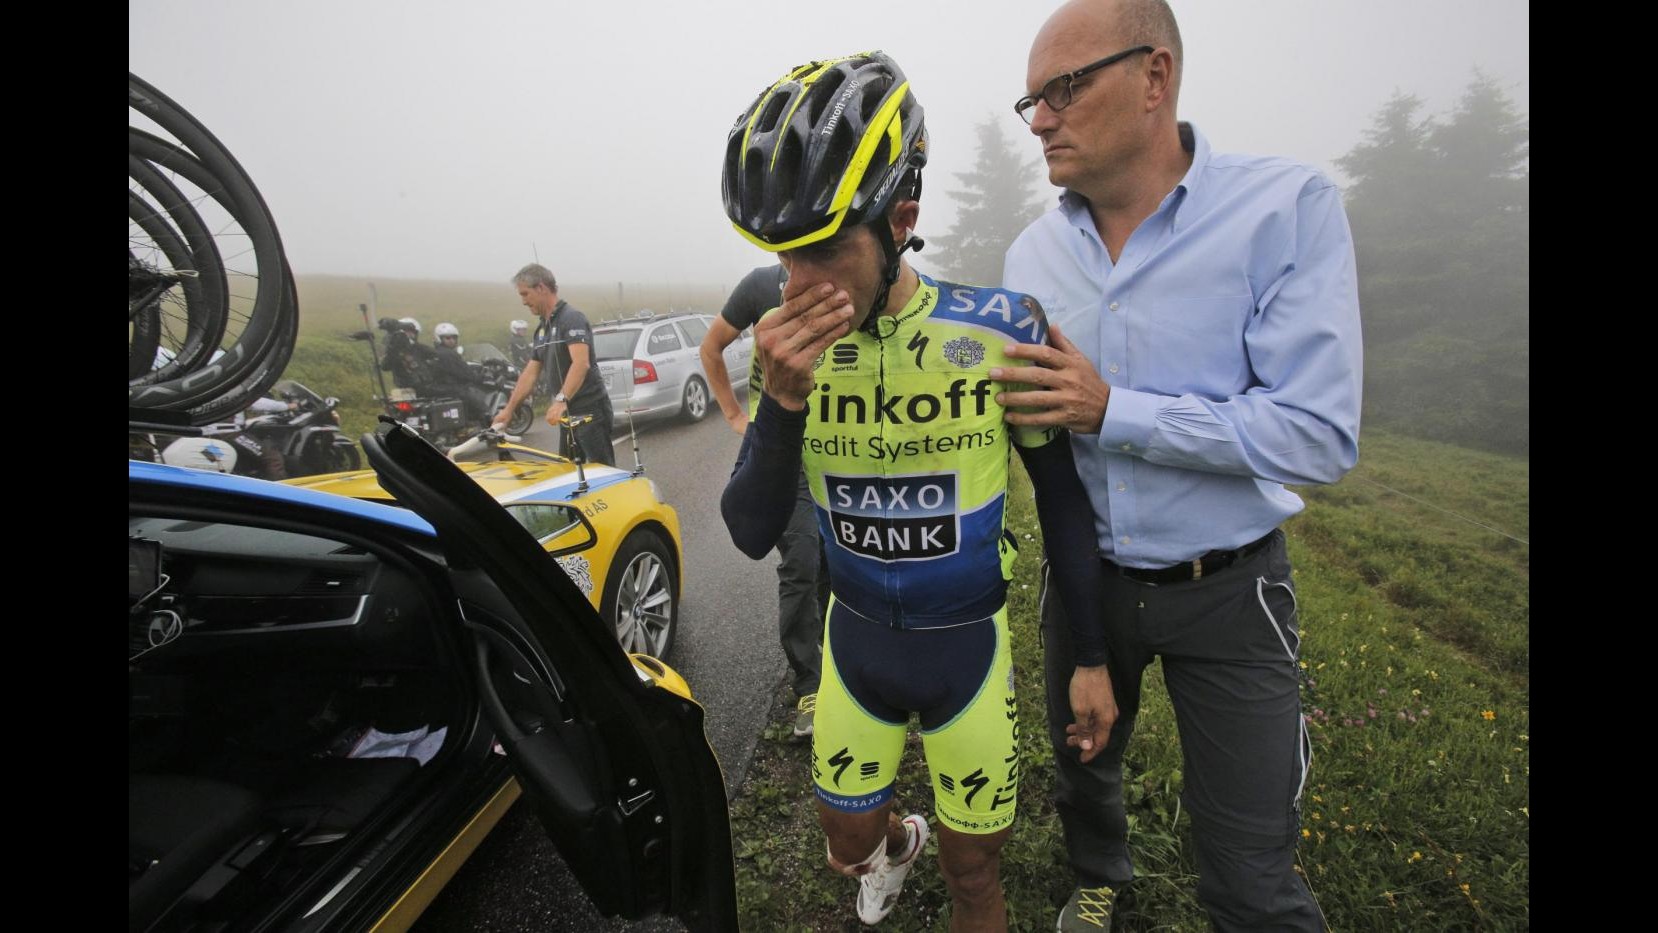 Ciclismo, Alberto Contador salterà anche la Vuelta: Giorno triste, non so quando torno